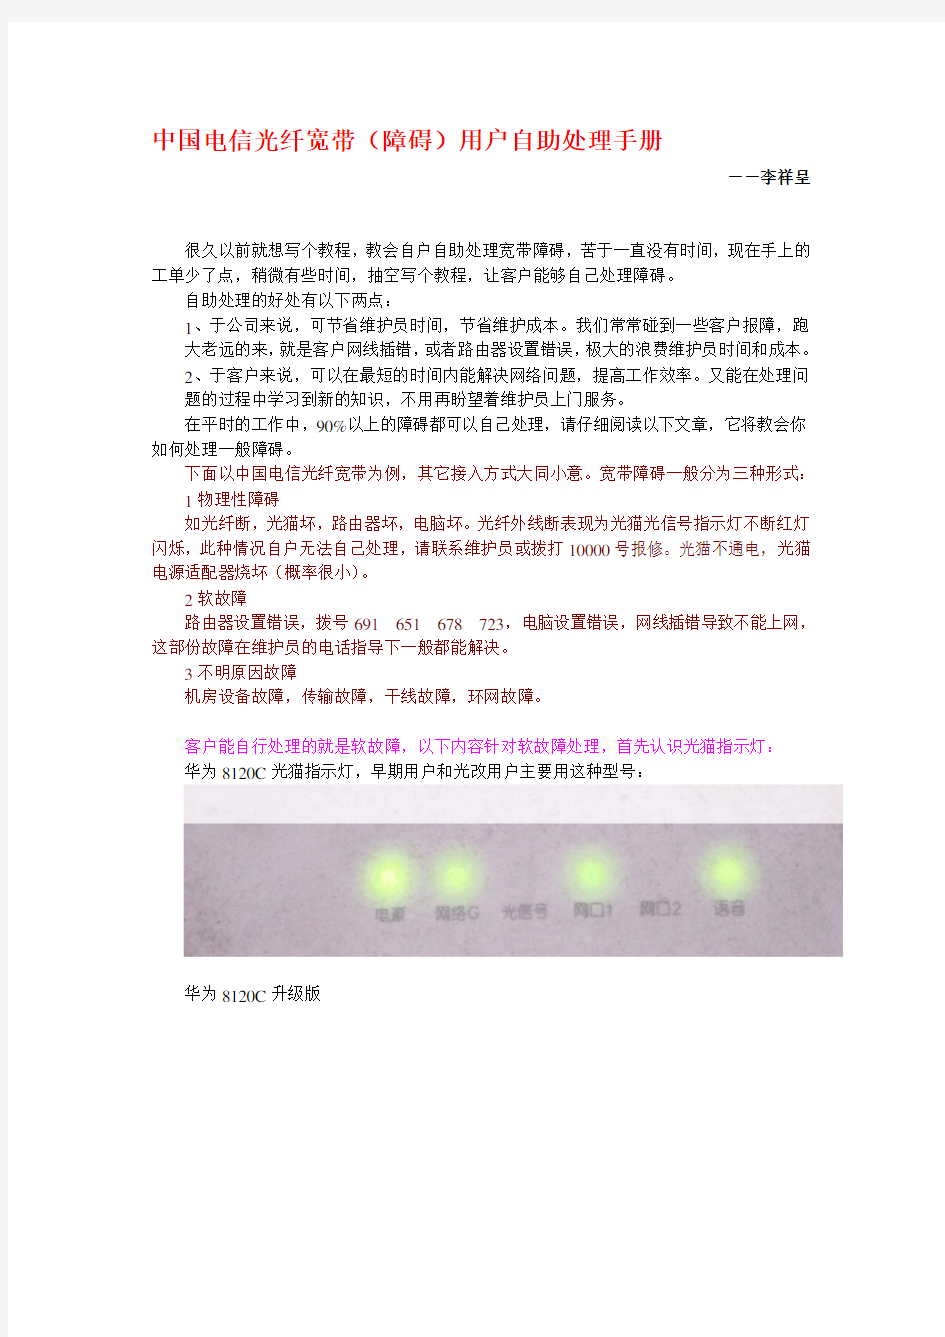 中国电信光纤宽带(障碍)用户自助处理手册-李祥呈